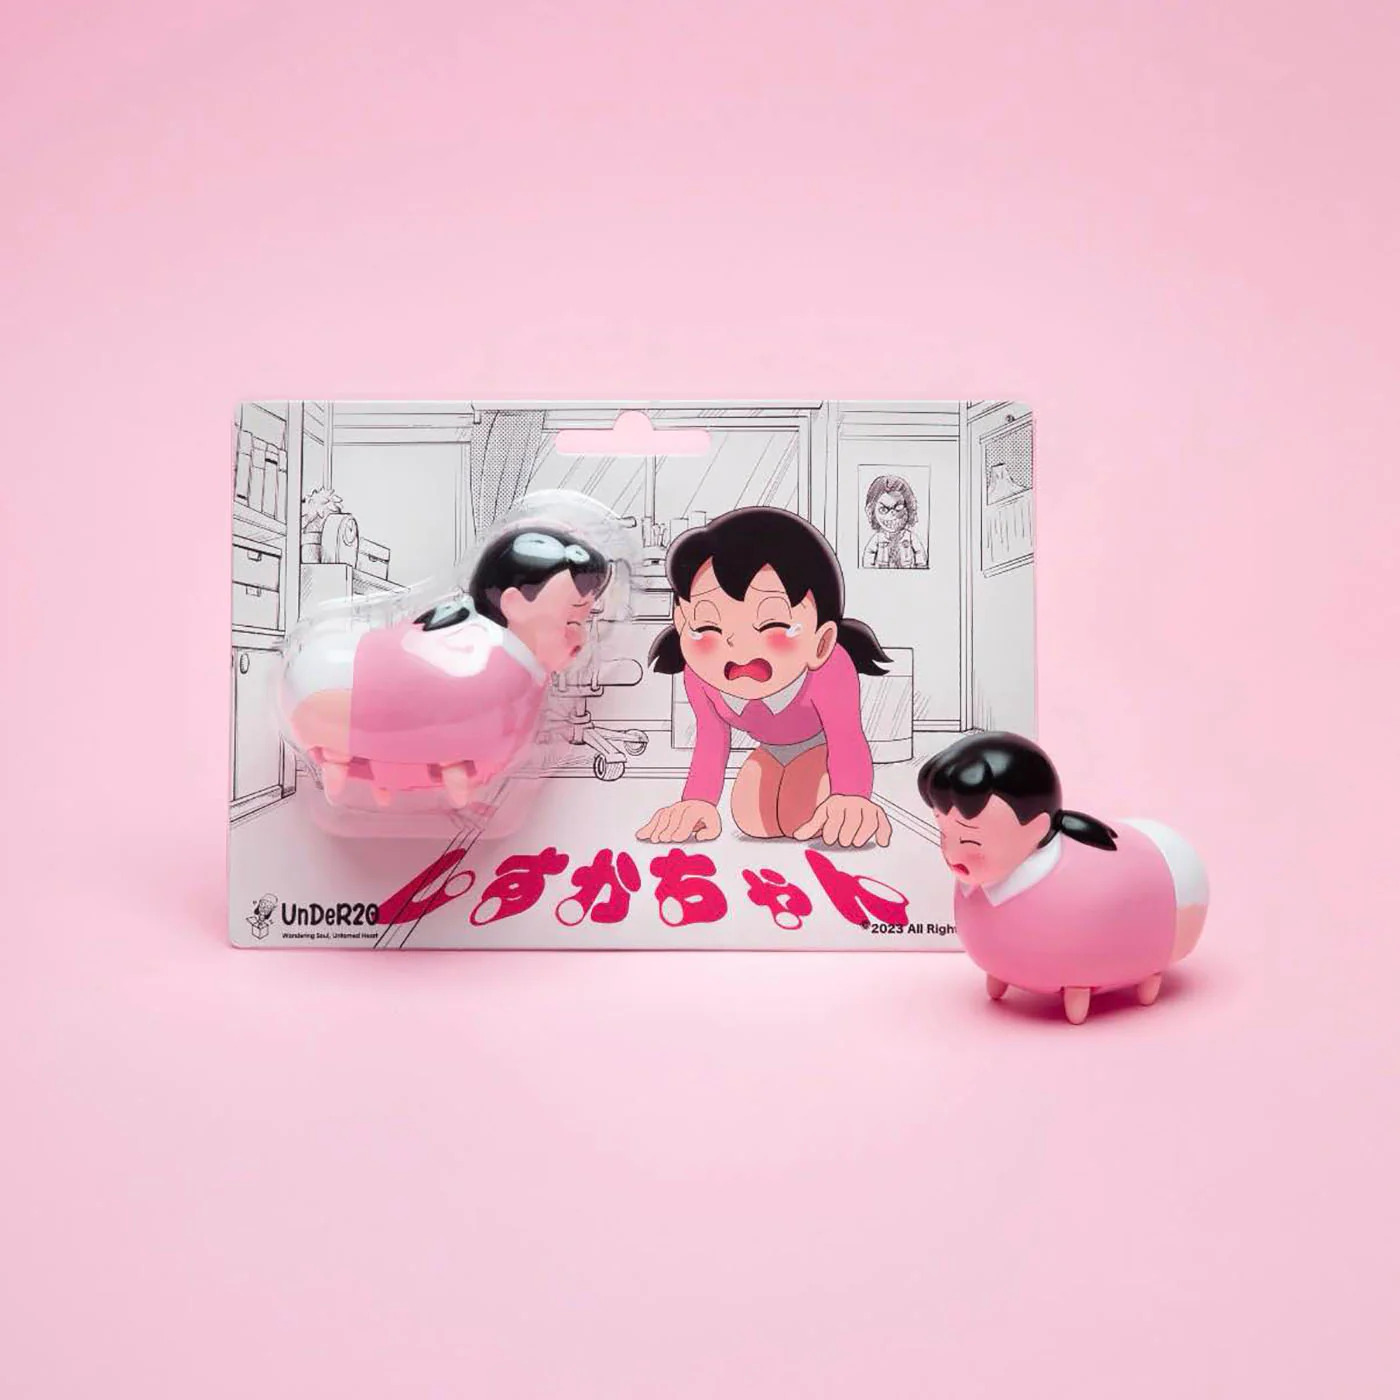 比便携静香还离谱！日本品牌推出犬型“爬行静香”玩具 发售即售罄